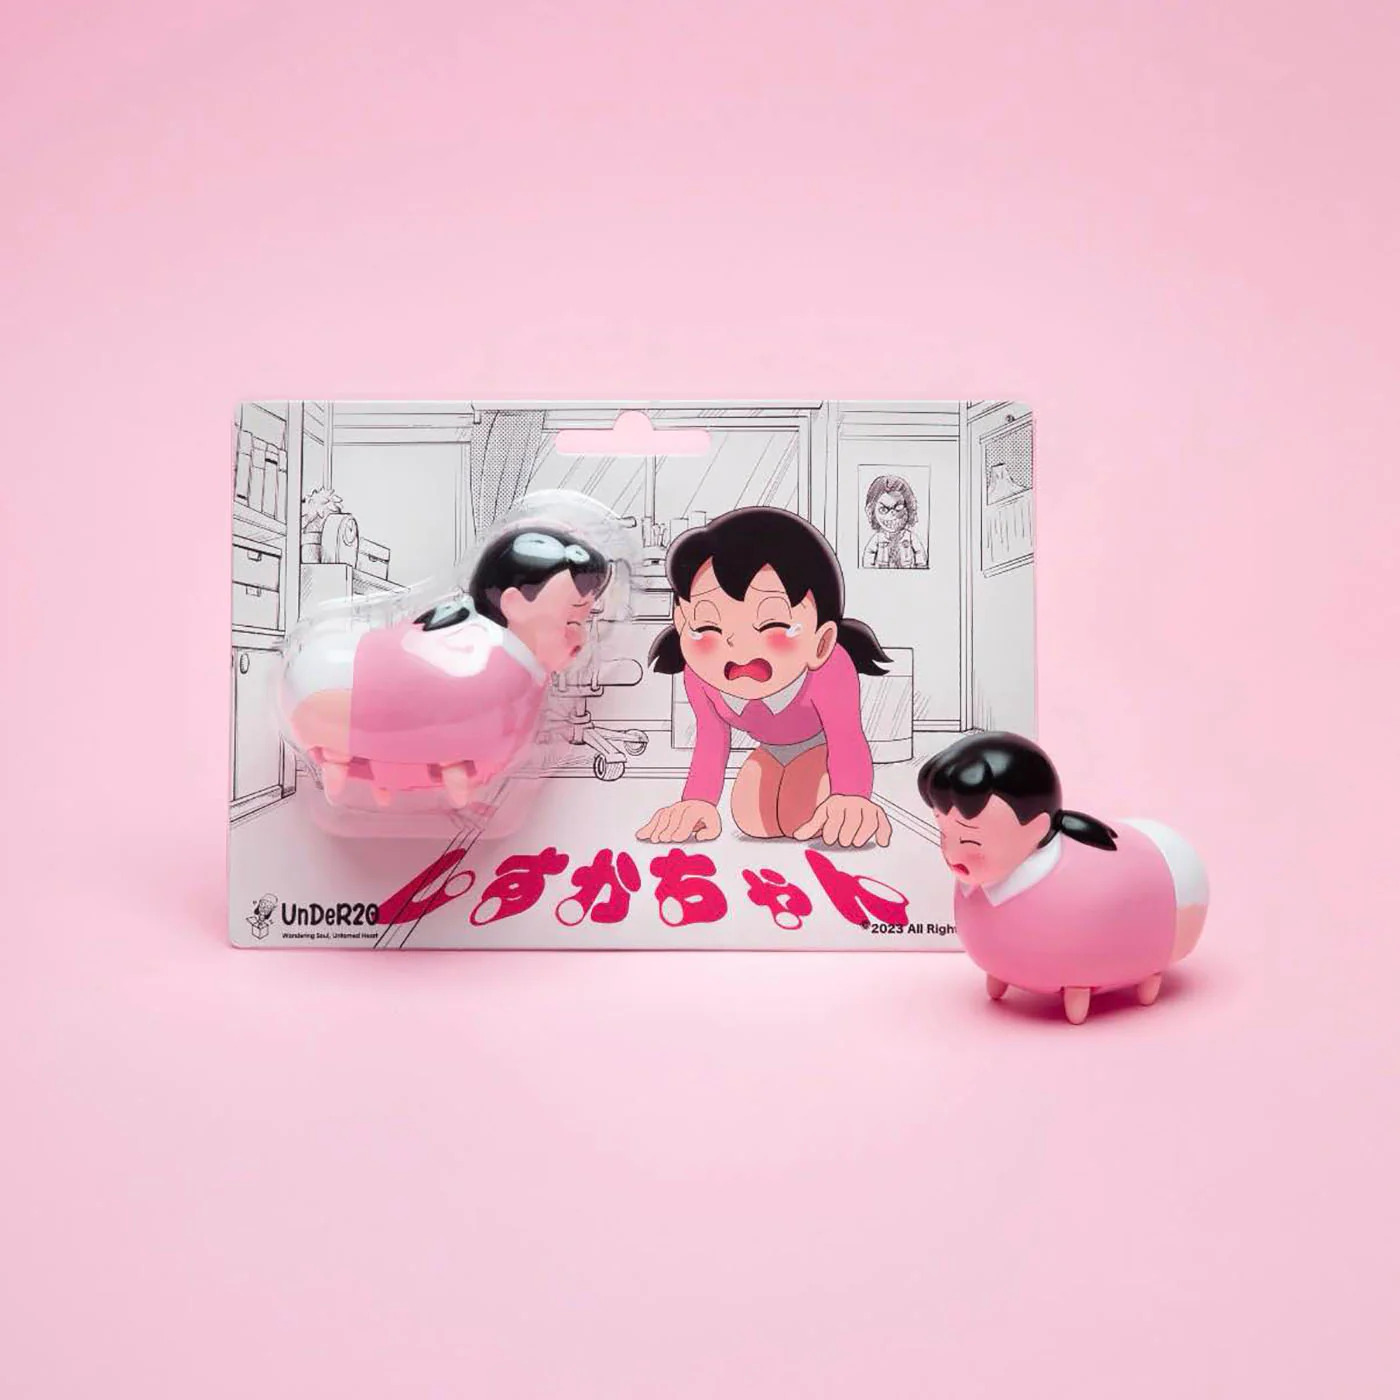 比便携静香还离谱！日本品牌推出犬型“爬行静香”玩具 发售即售罄